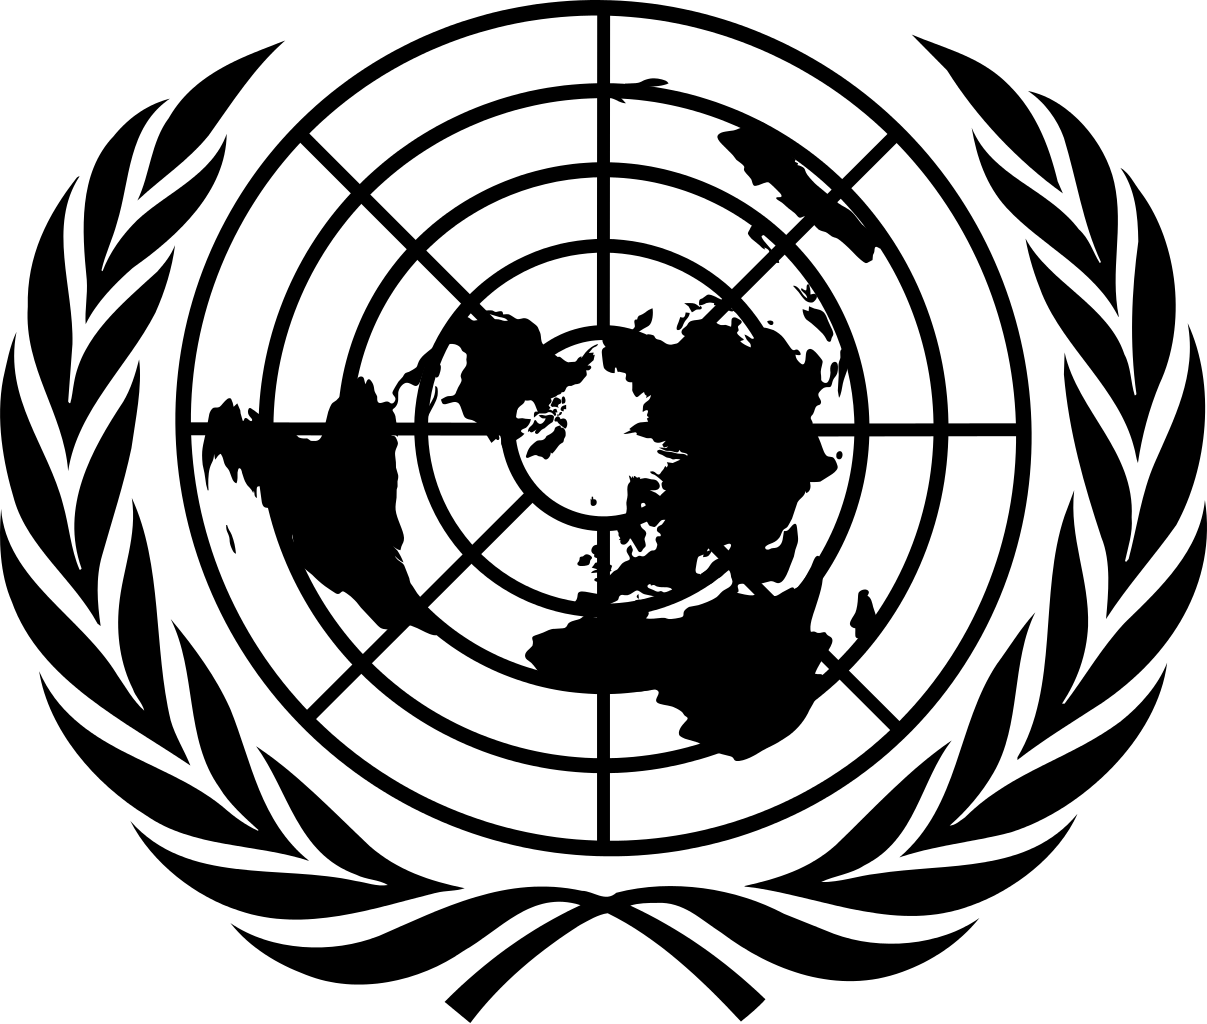 United Nations Emblem Logo PNG Image